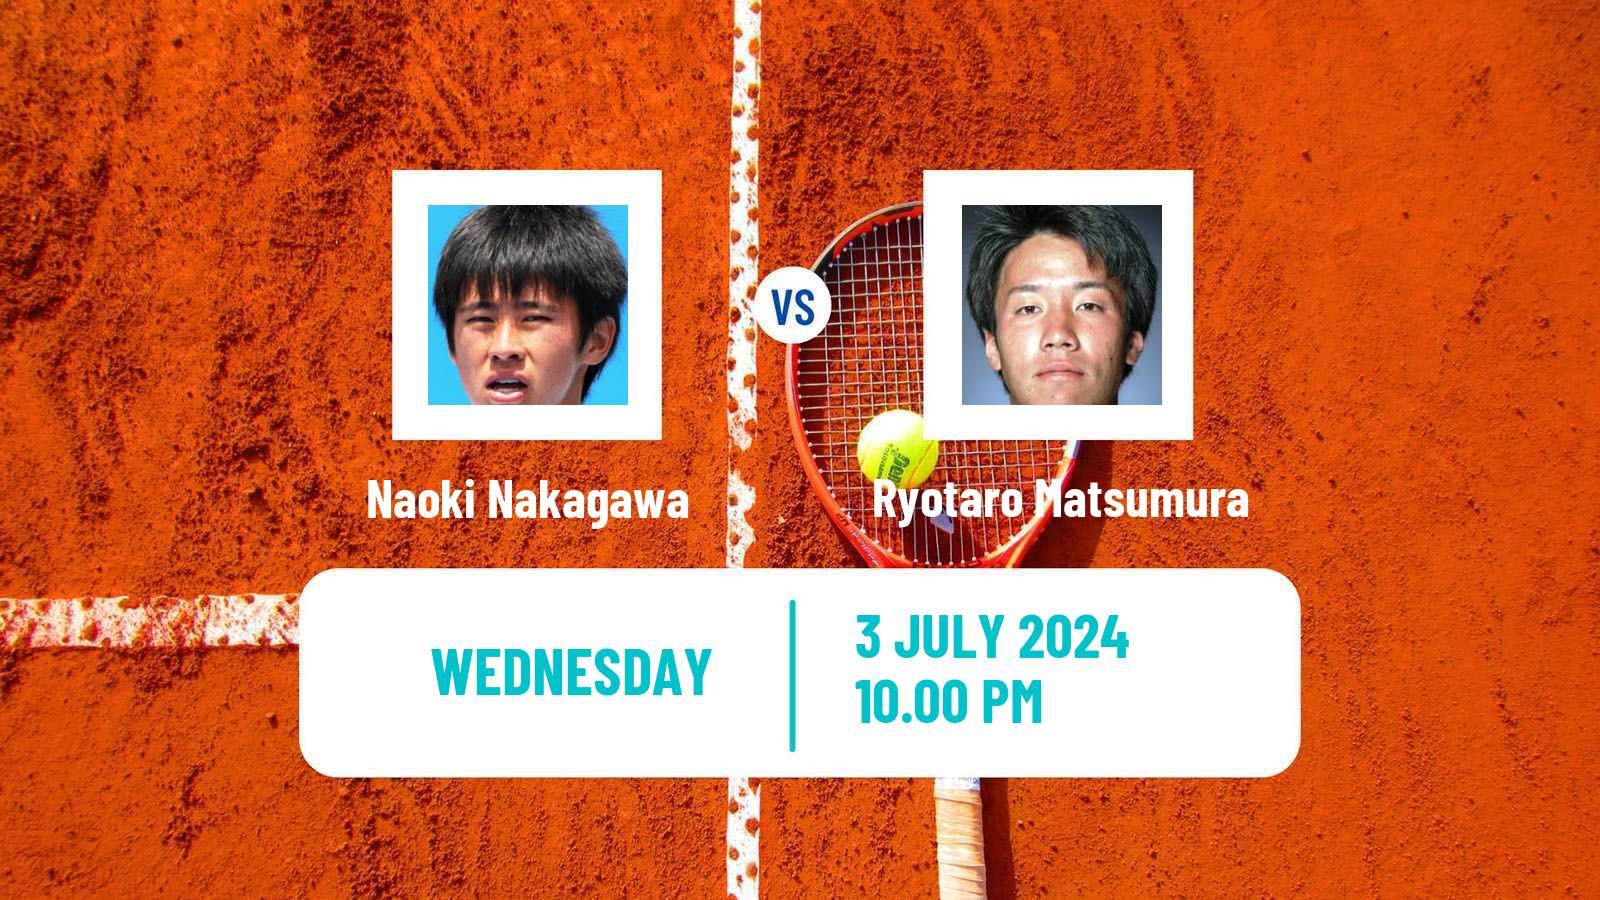 Tennis ITF M15 Tokyo Men Naoki Nakagawa - Ryotaro Matsumura